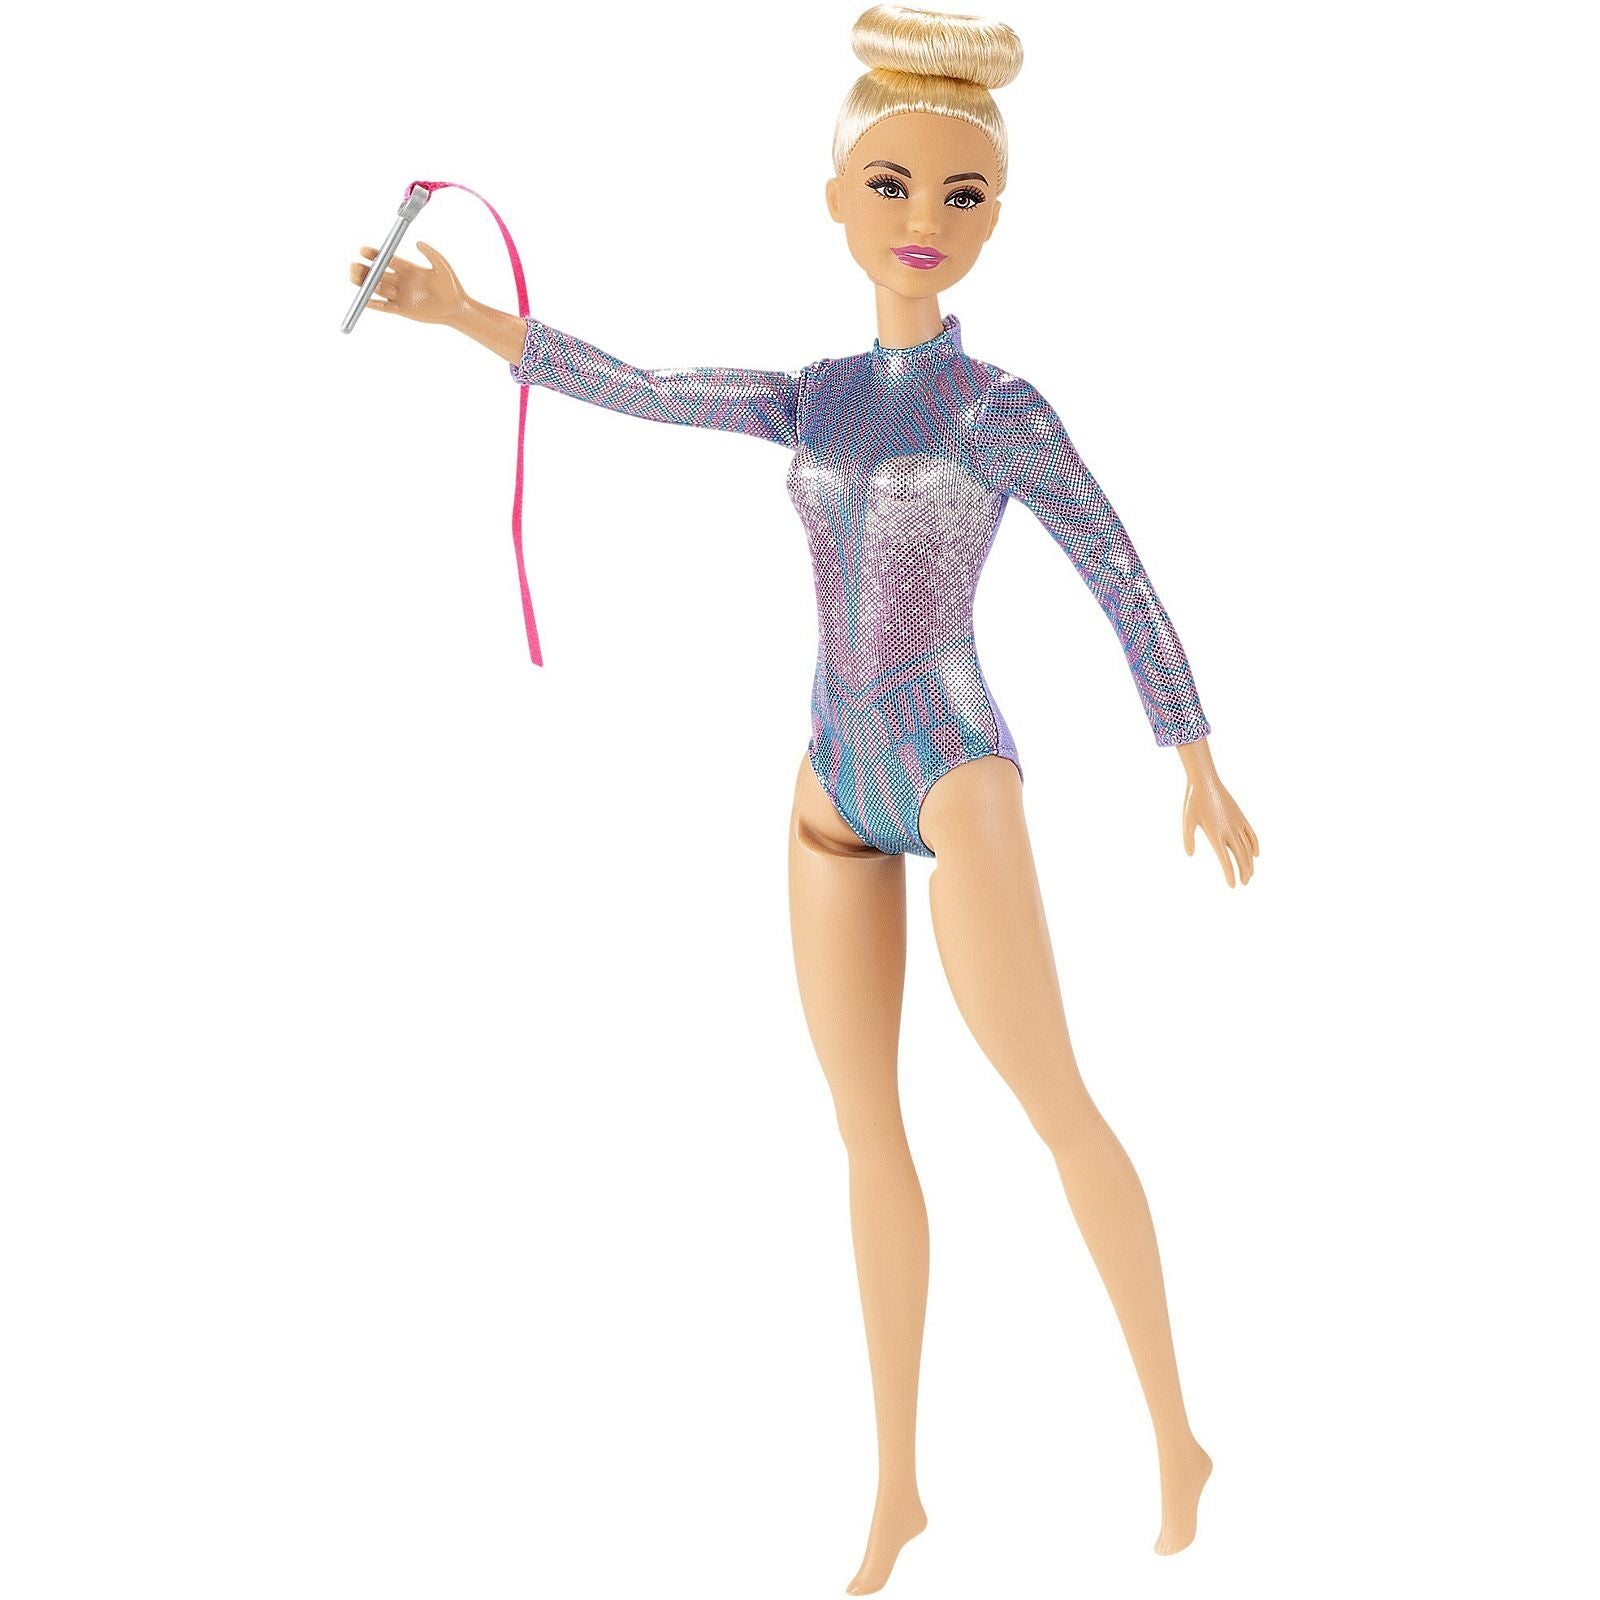 Barbie Careers Doll - Rhythmic Gymnast (Blonde)